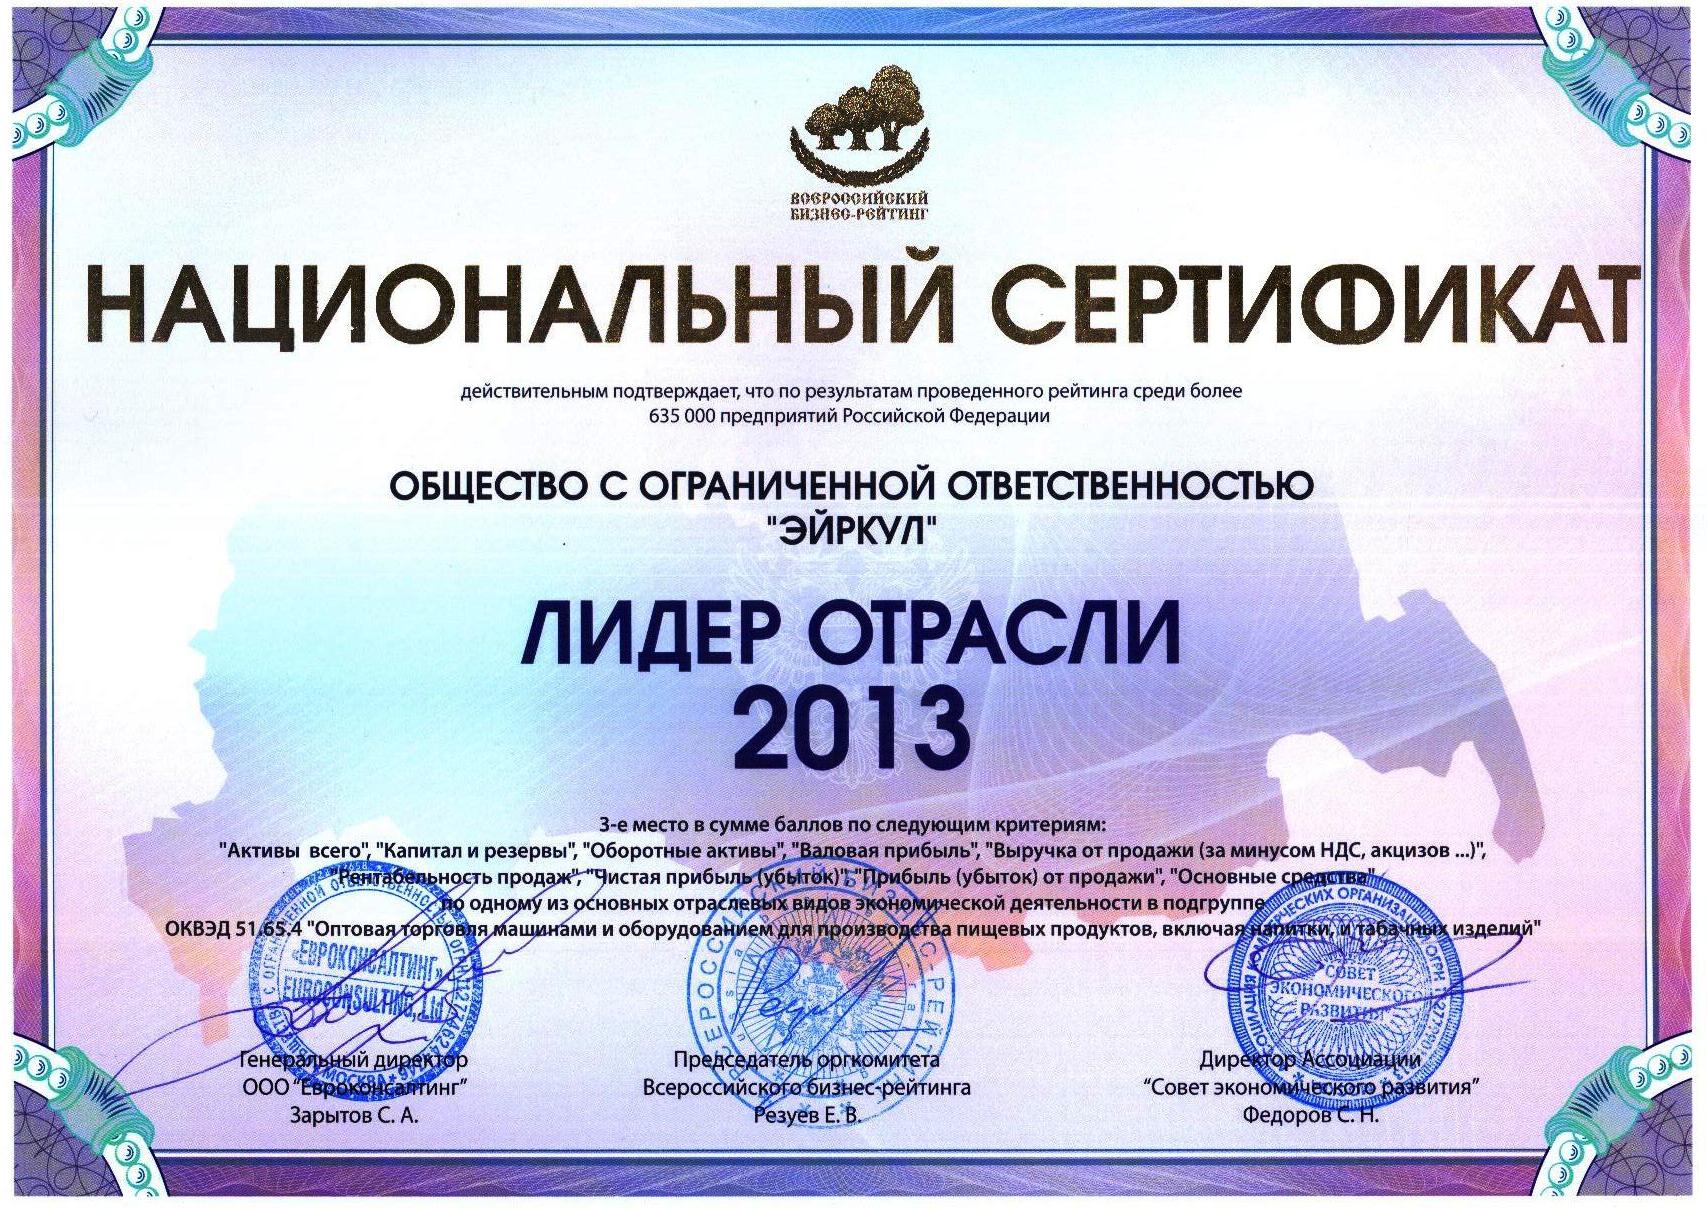 сертификат лидер отрасли 2013